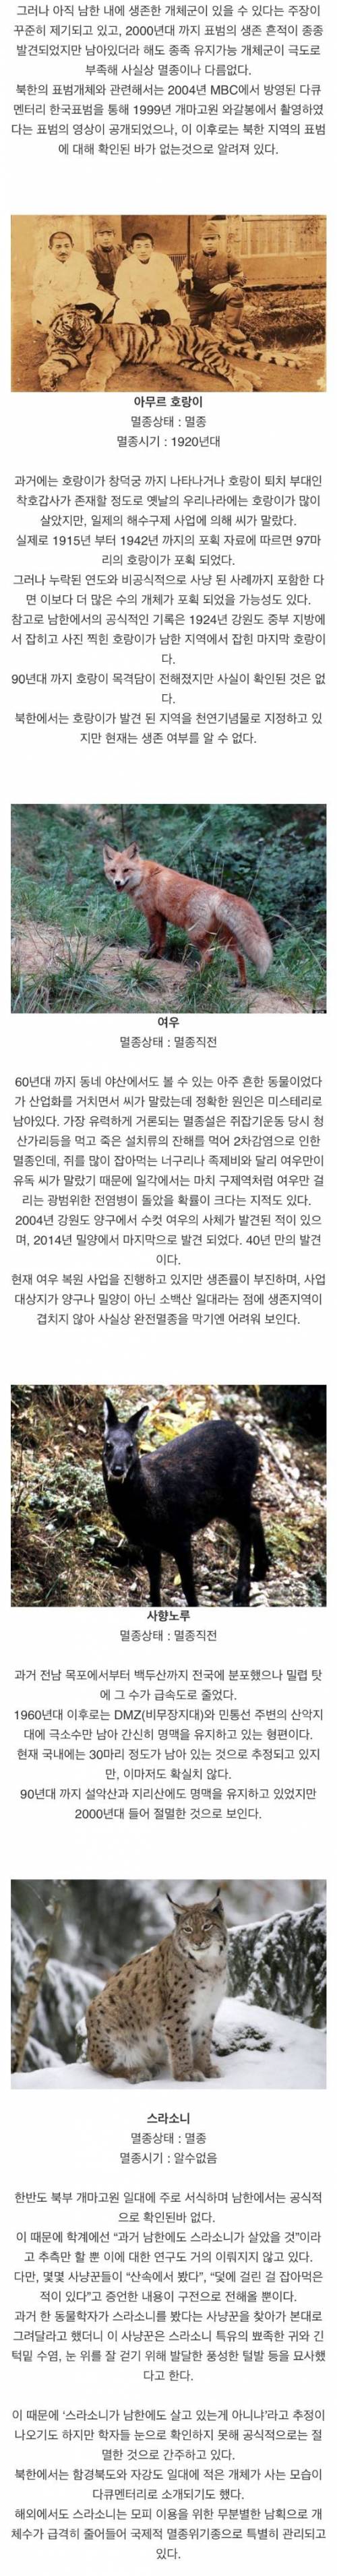 [스압] 한국에서 멸종된 동물들.jpg